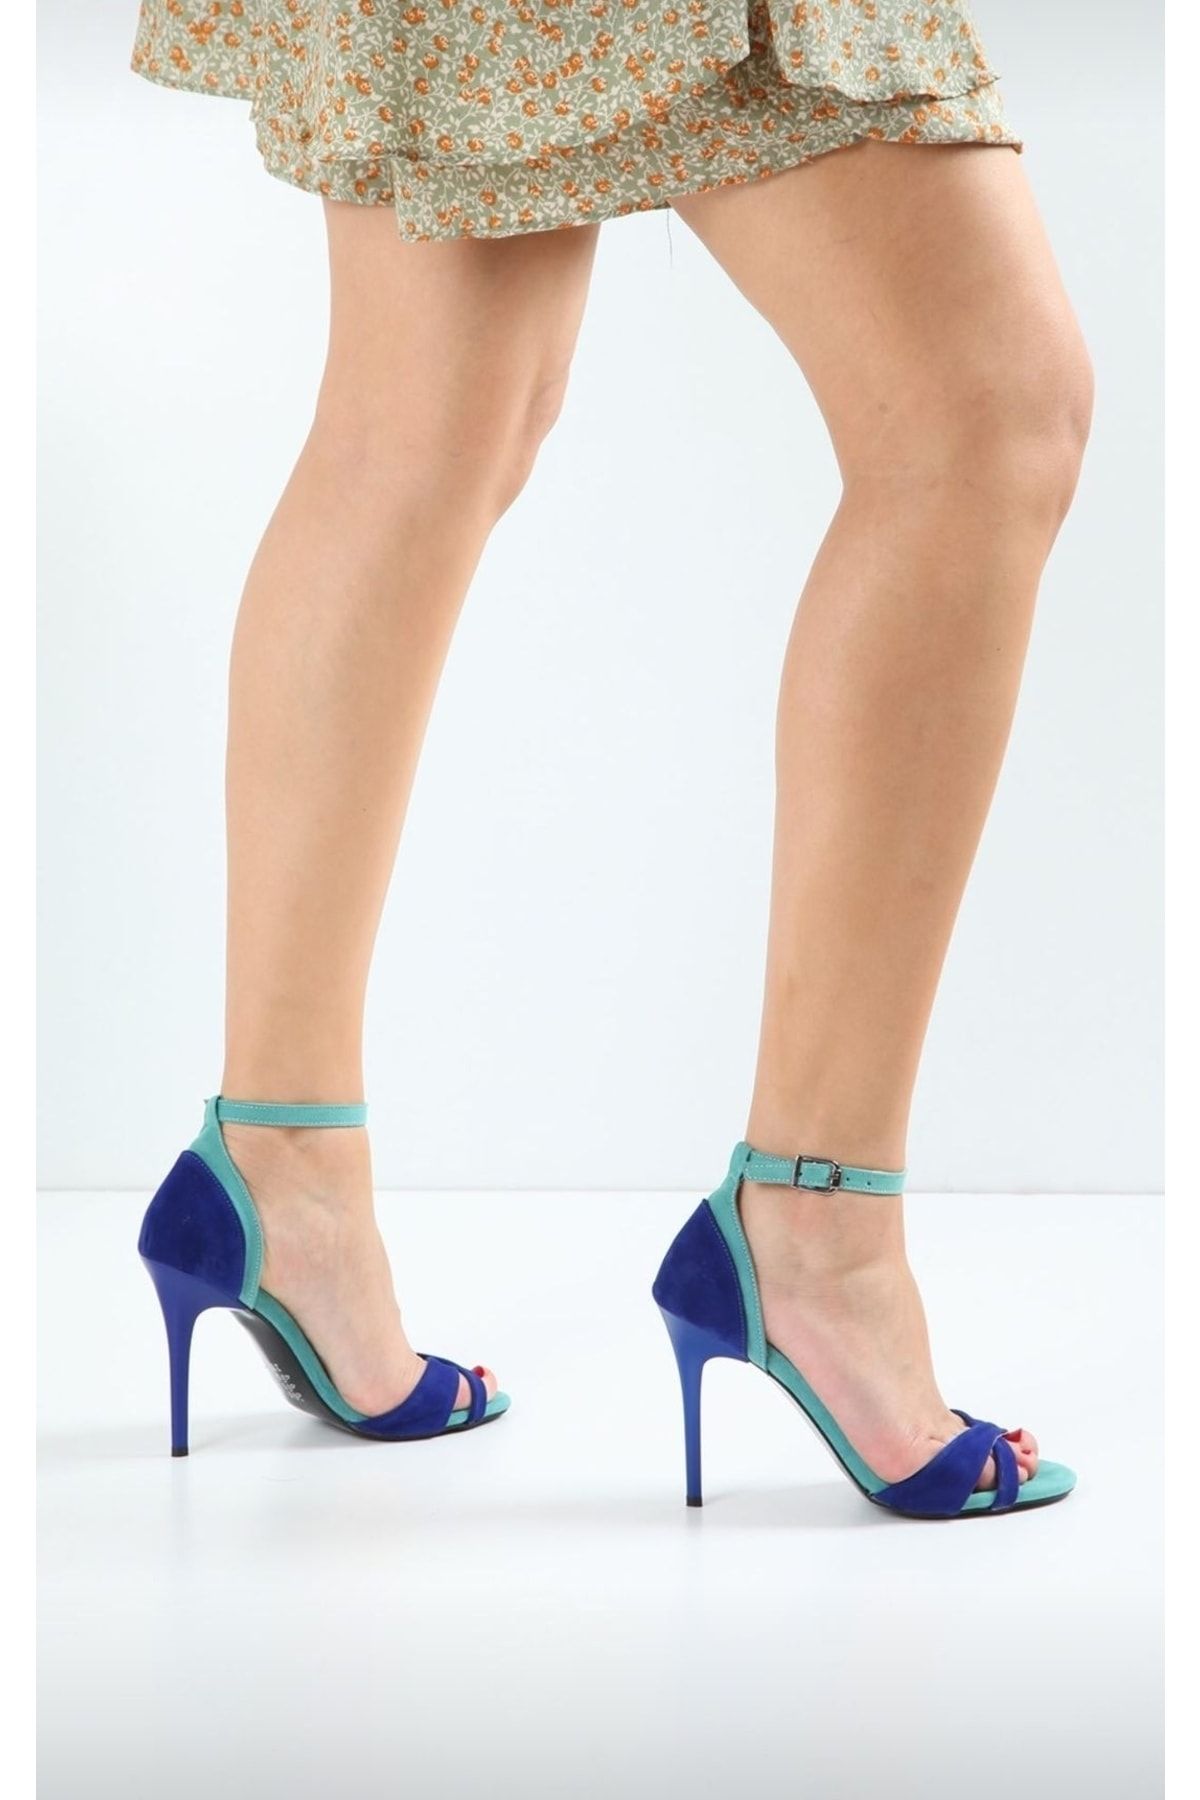 sweet girl Kadın Saks Mavi Lacivert Yeşil Tek Bant Açık Abiye Bilekten Sivri Yüksek Topuklu Ayakkabı